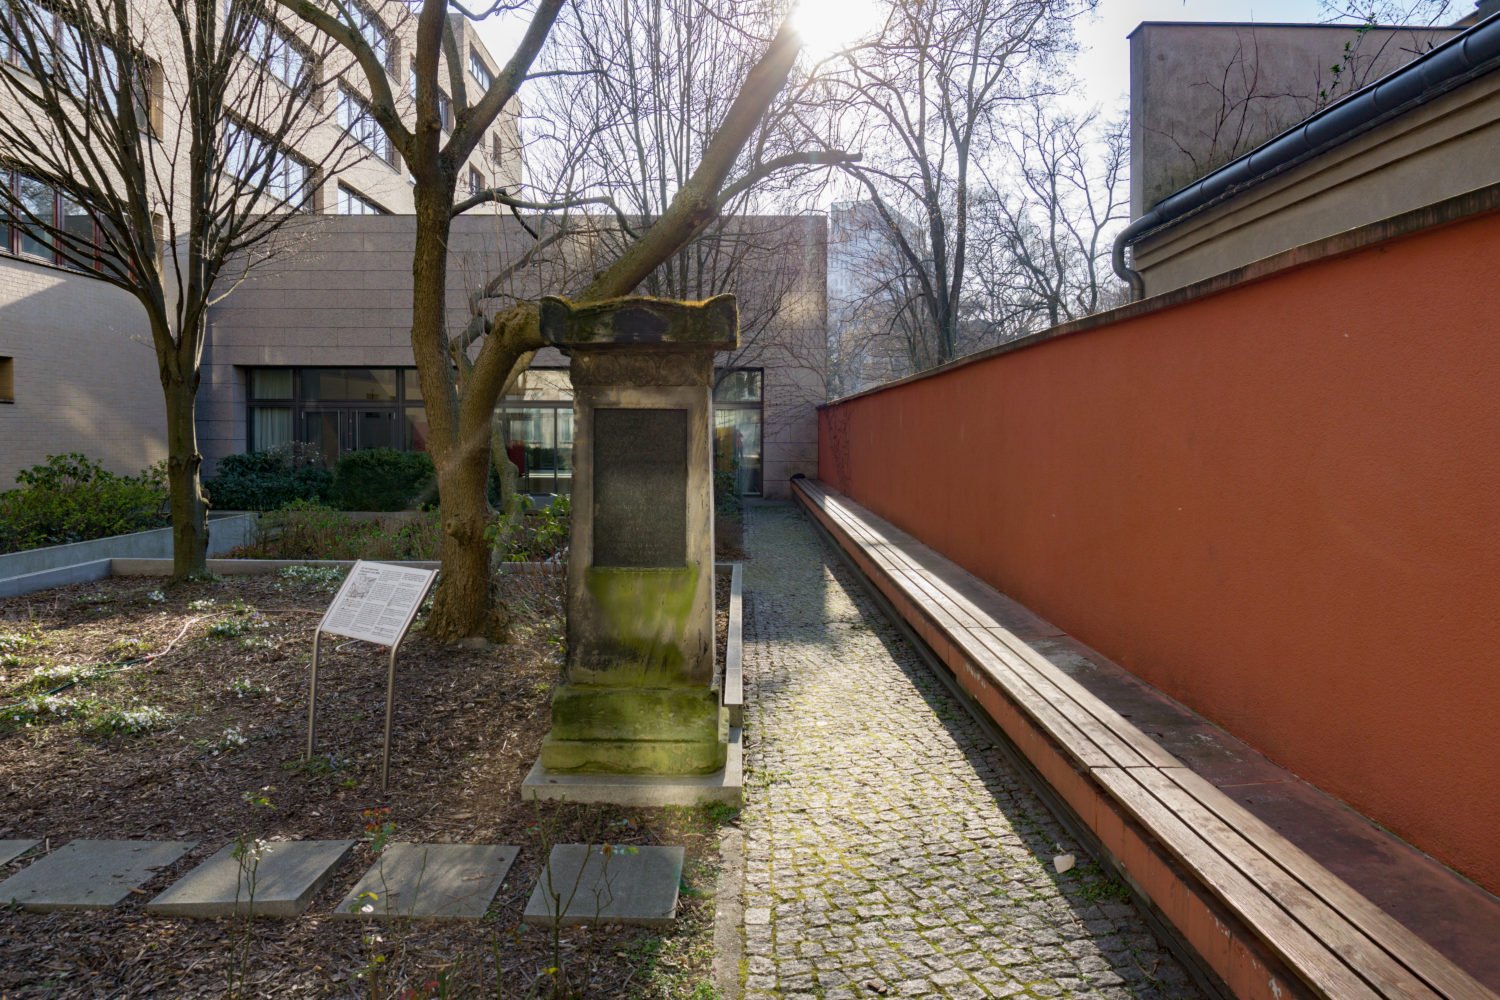 Hinterhöfe in Berlin-Mitte: Im Innenhof der Katholischen Akademie liegt das Grab von Antoinette Weiss. Foto: MM